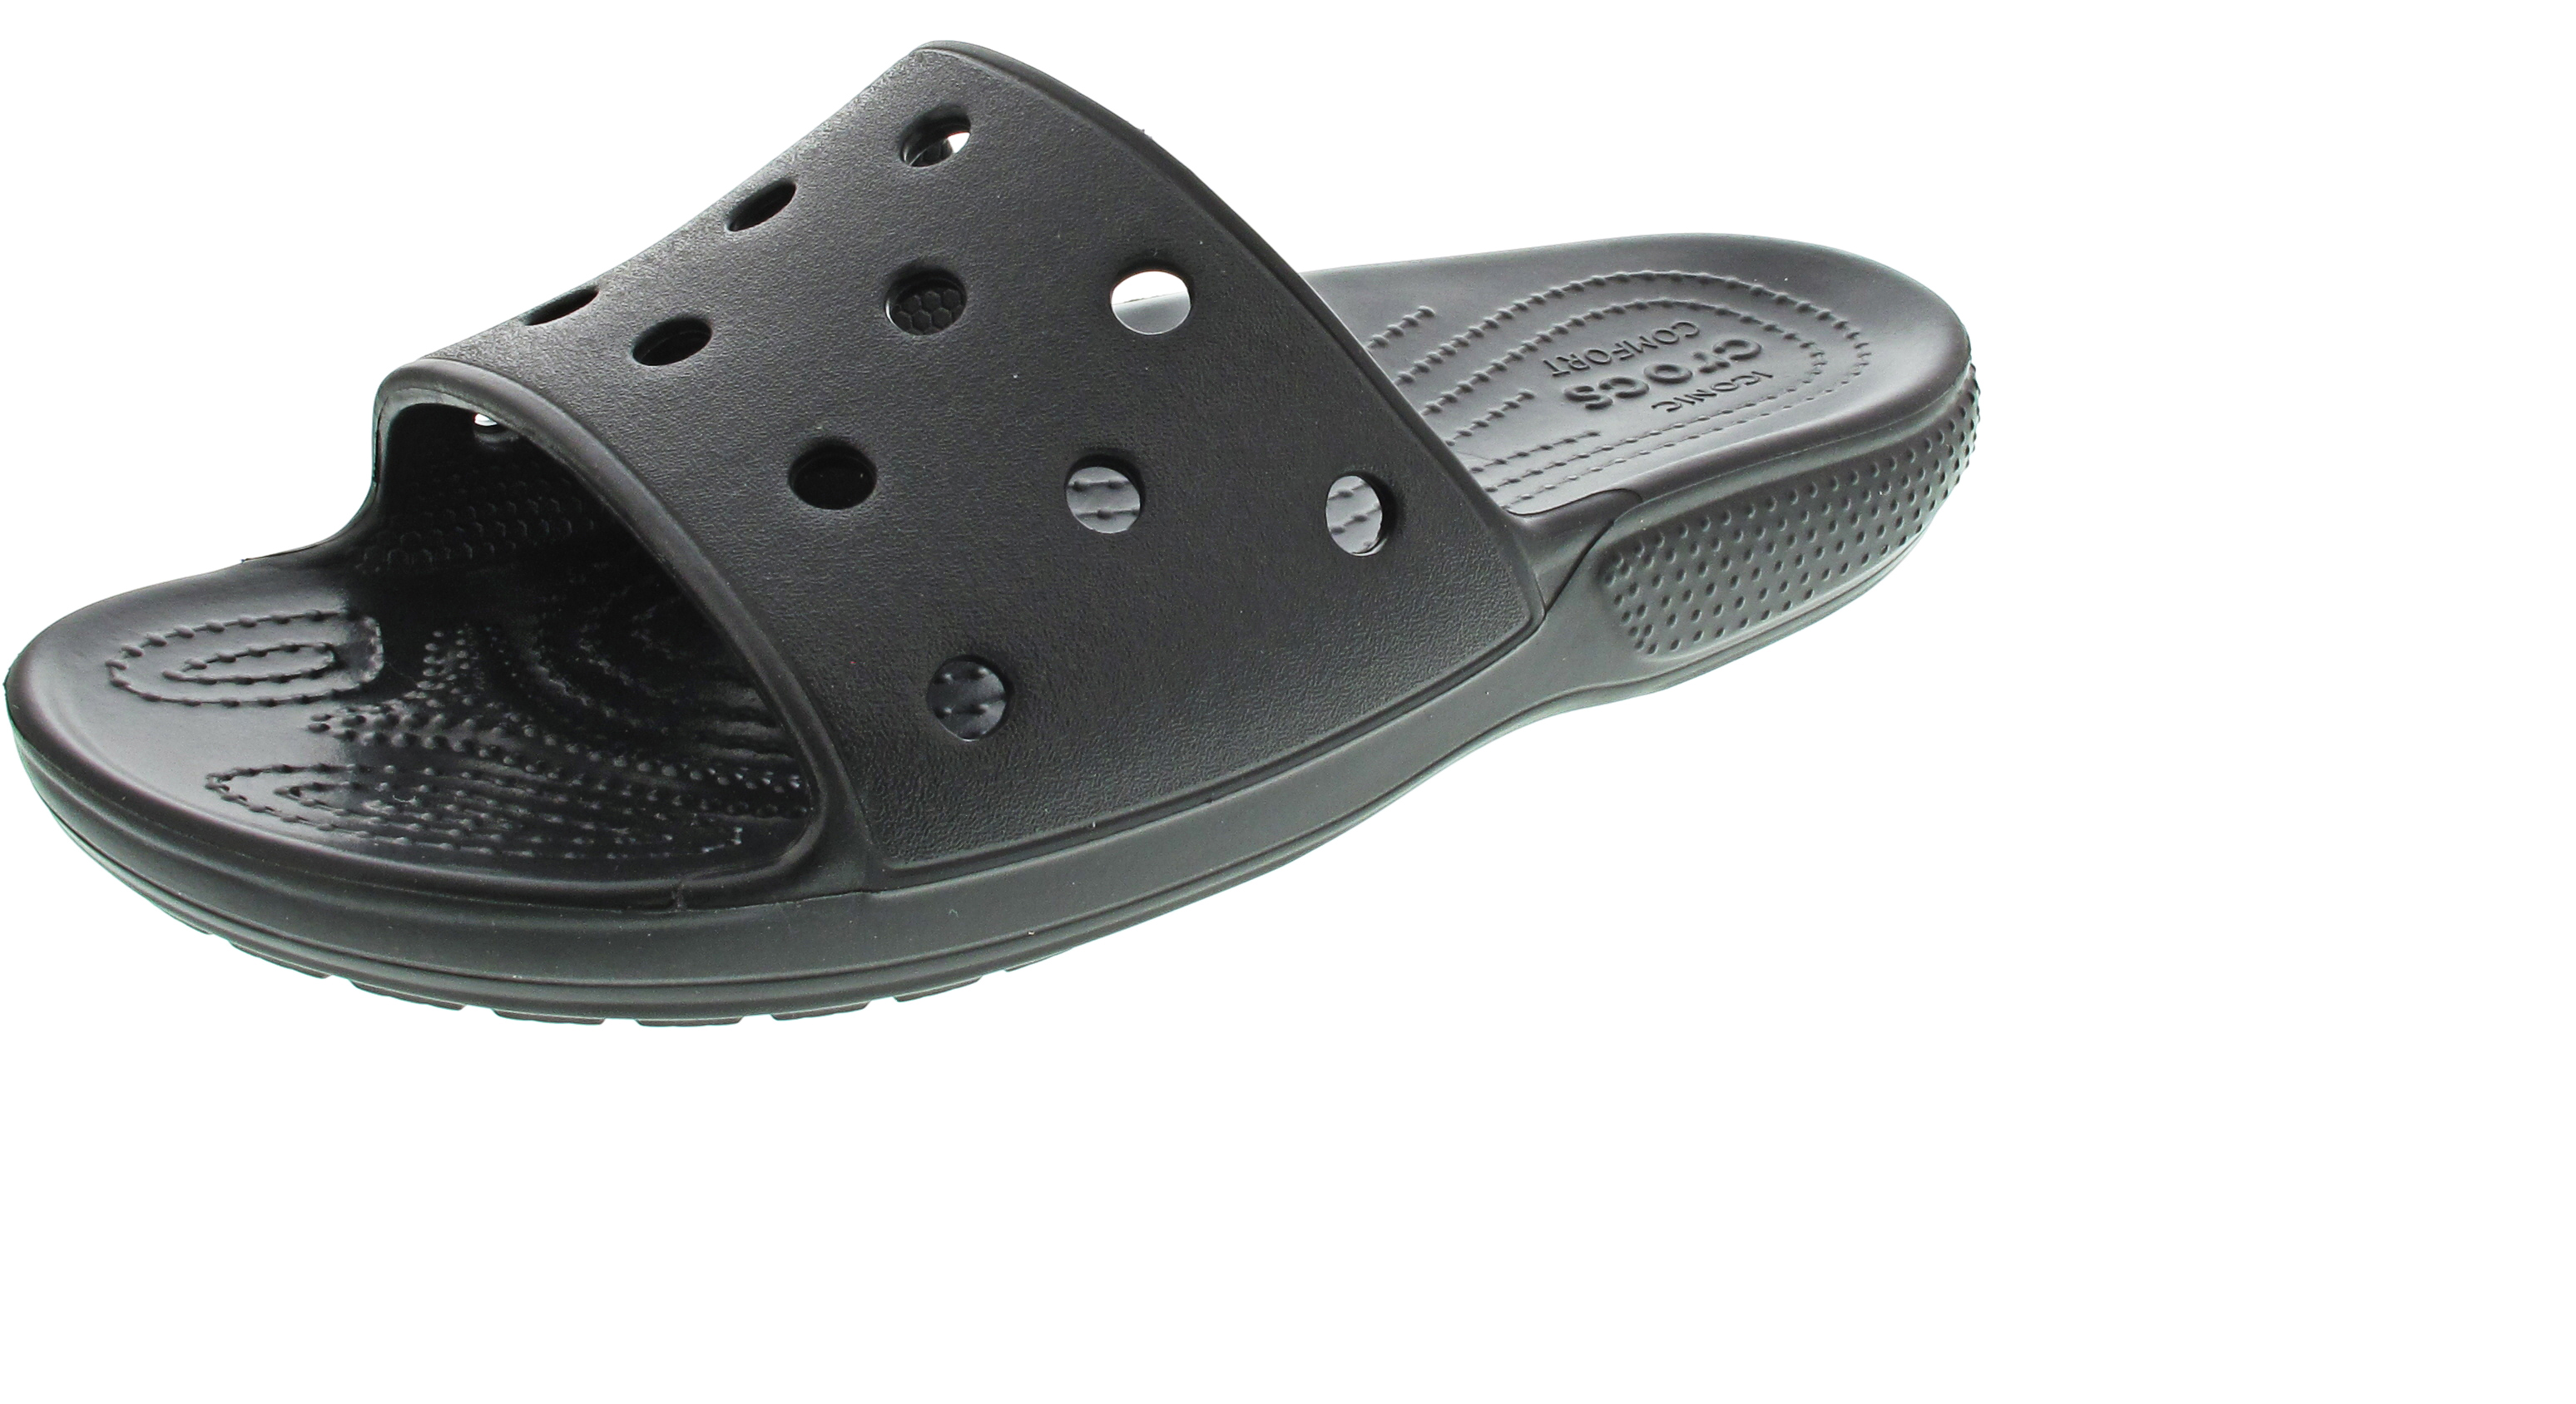 Crocs Classic Crocs Slide